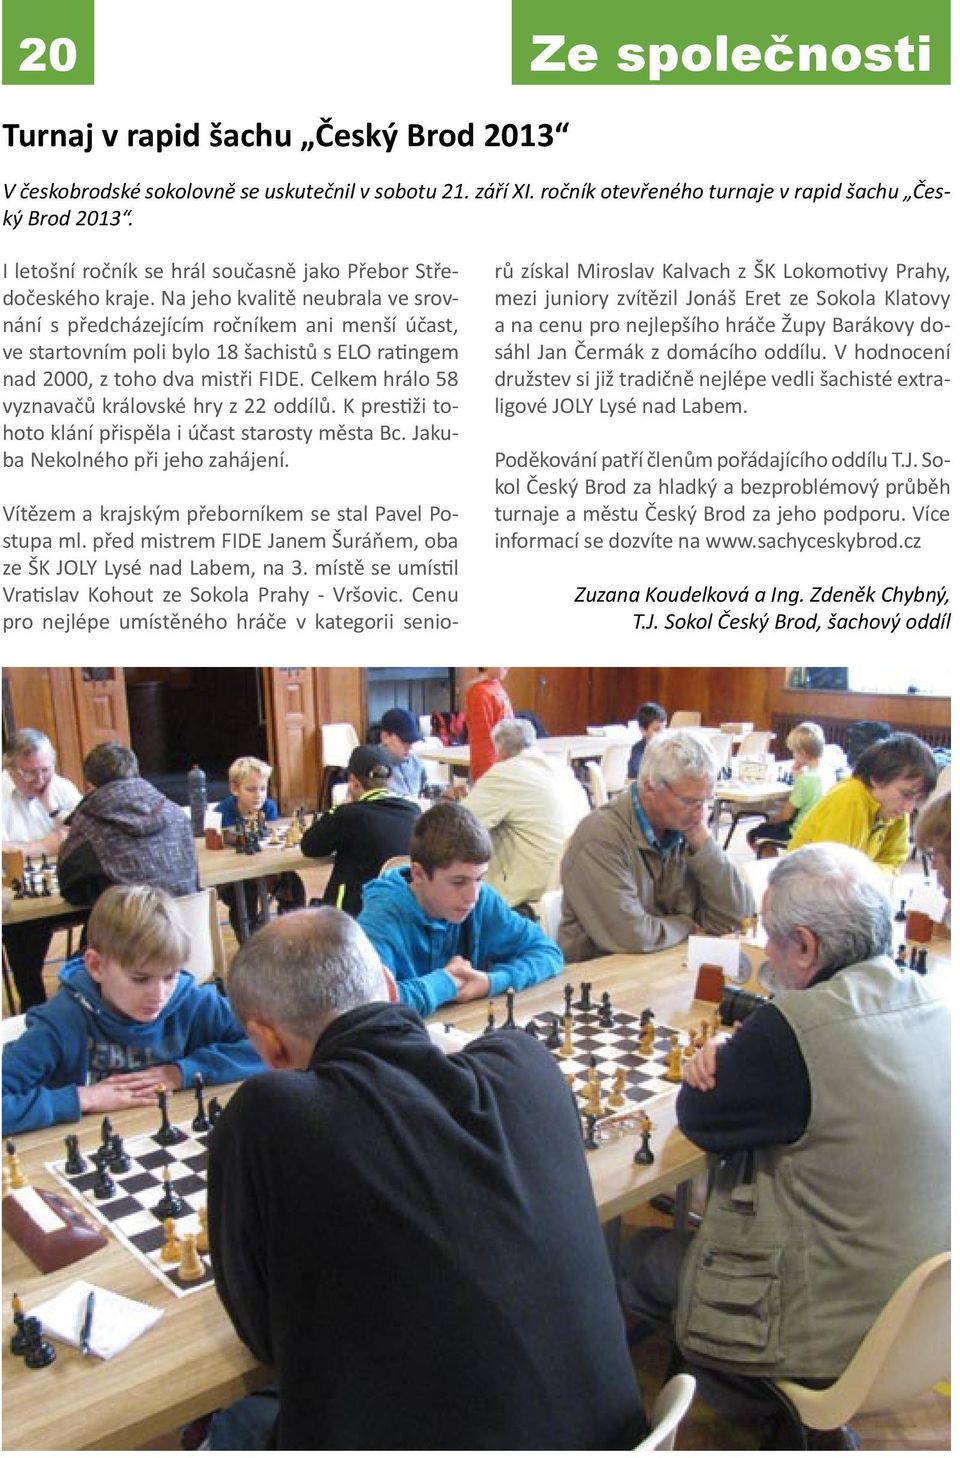 Na jeho kvalitě neubrala ve srovnání s předcházejícím ročníkem ani menší účast, ve startovním poli bylo 18 šachistů s ELO ratingem nad 2000, z toho dva mistři FIDE.